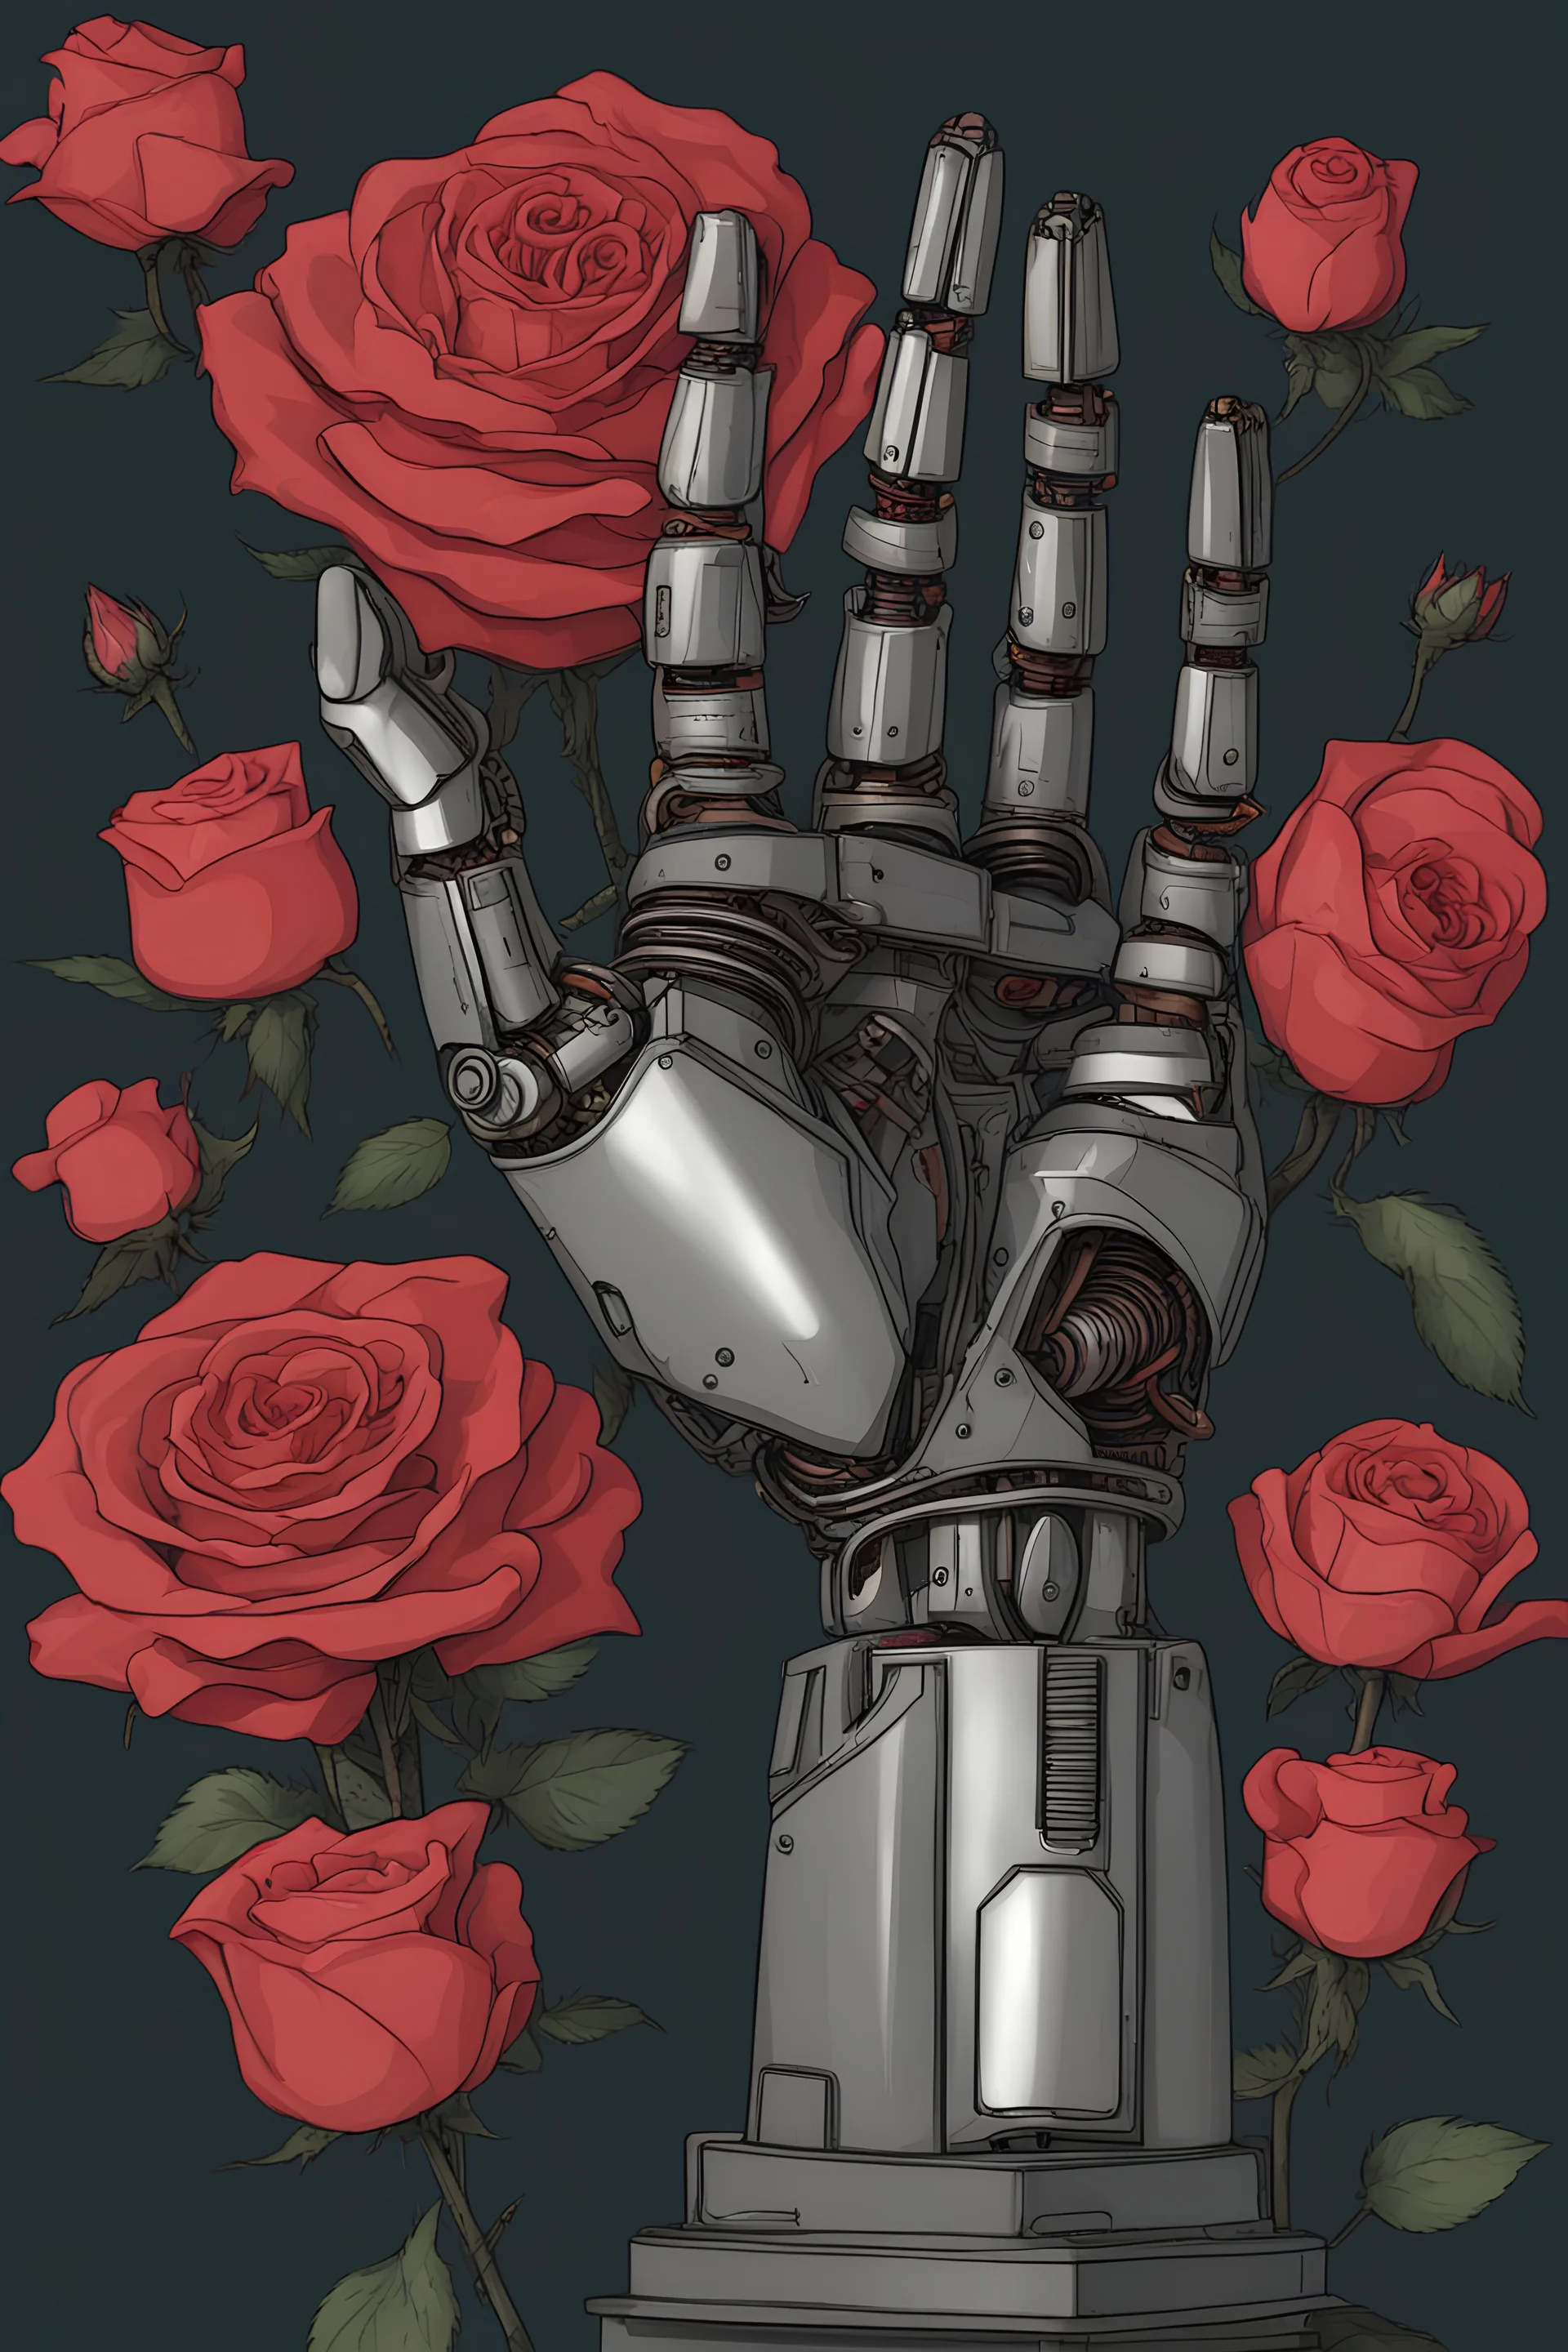 huge robot hand holding rose